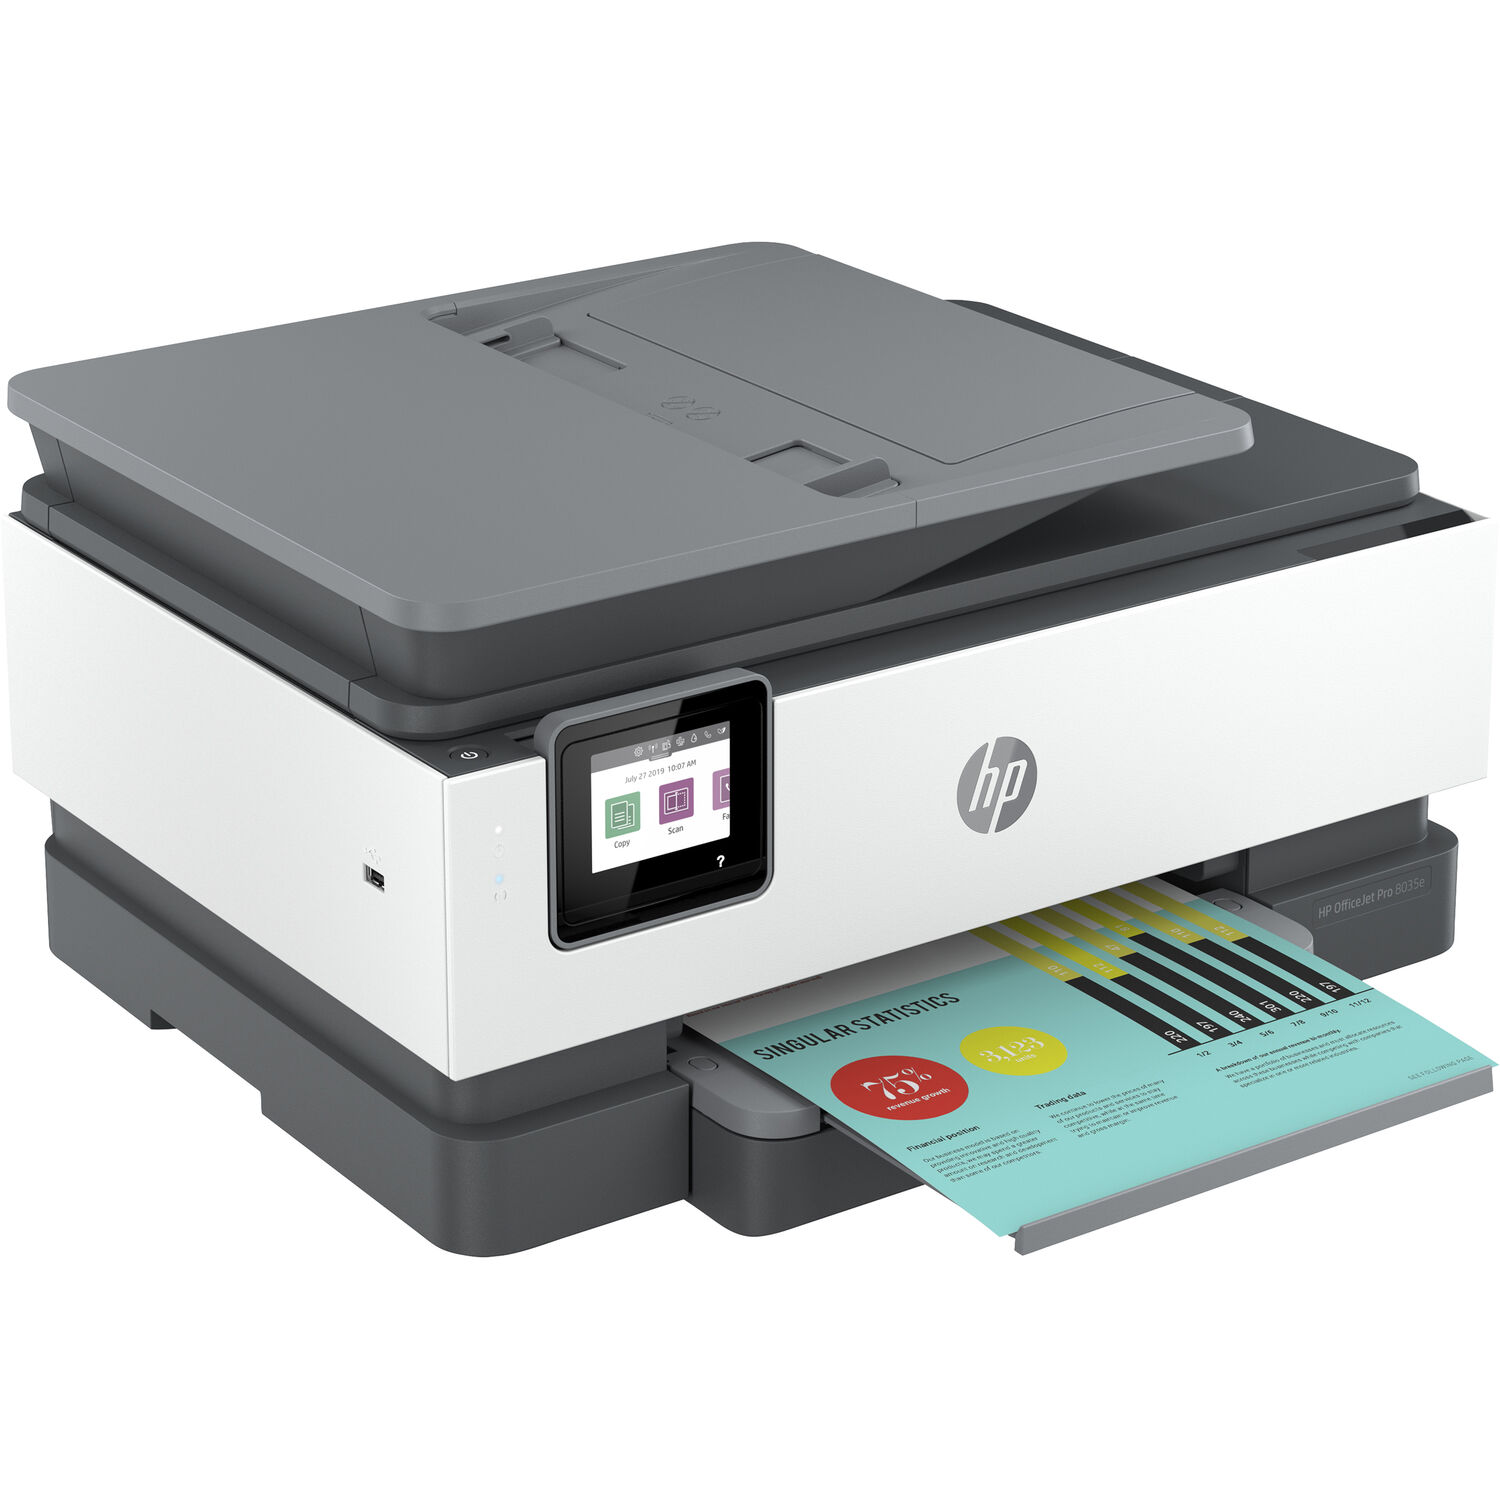 Impresora Todo en Uno Hp Officejet Pro 8035E con 6 Meses de Tinta Gratis a Través de Hp+ Basalto